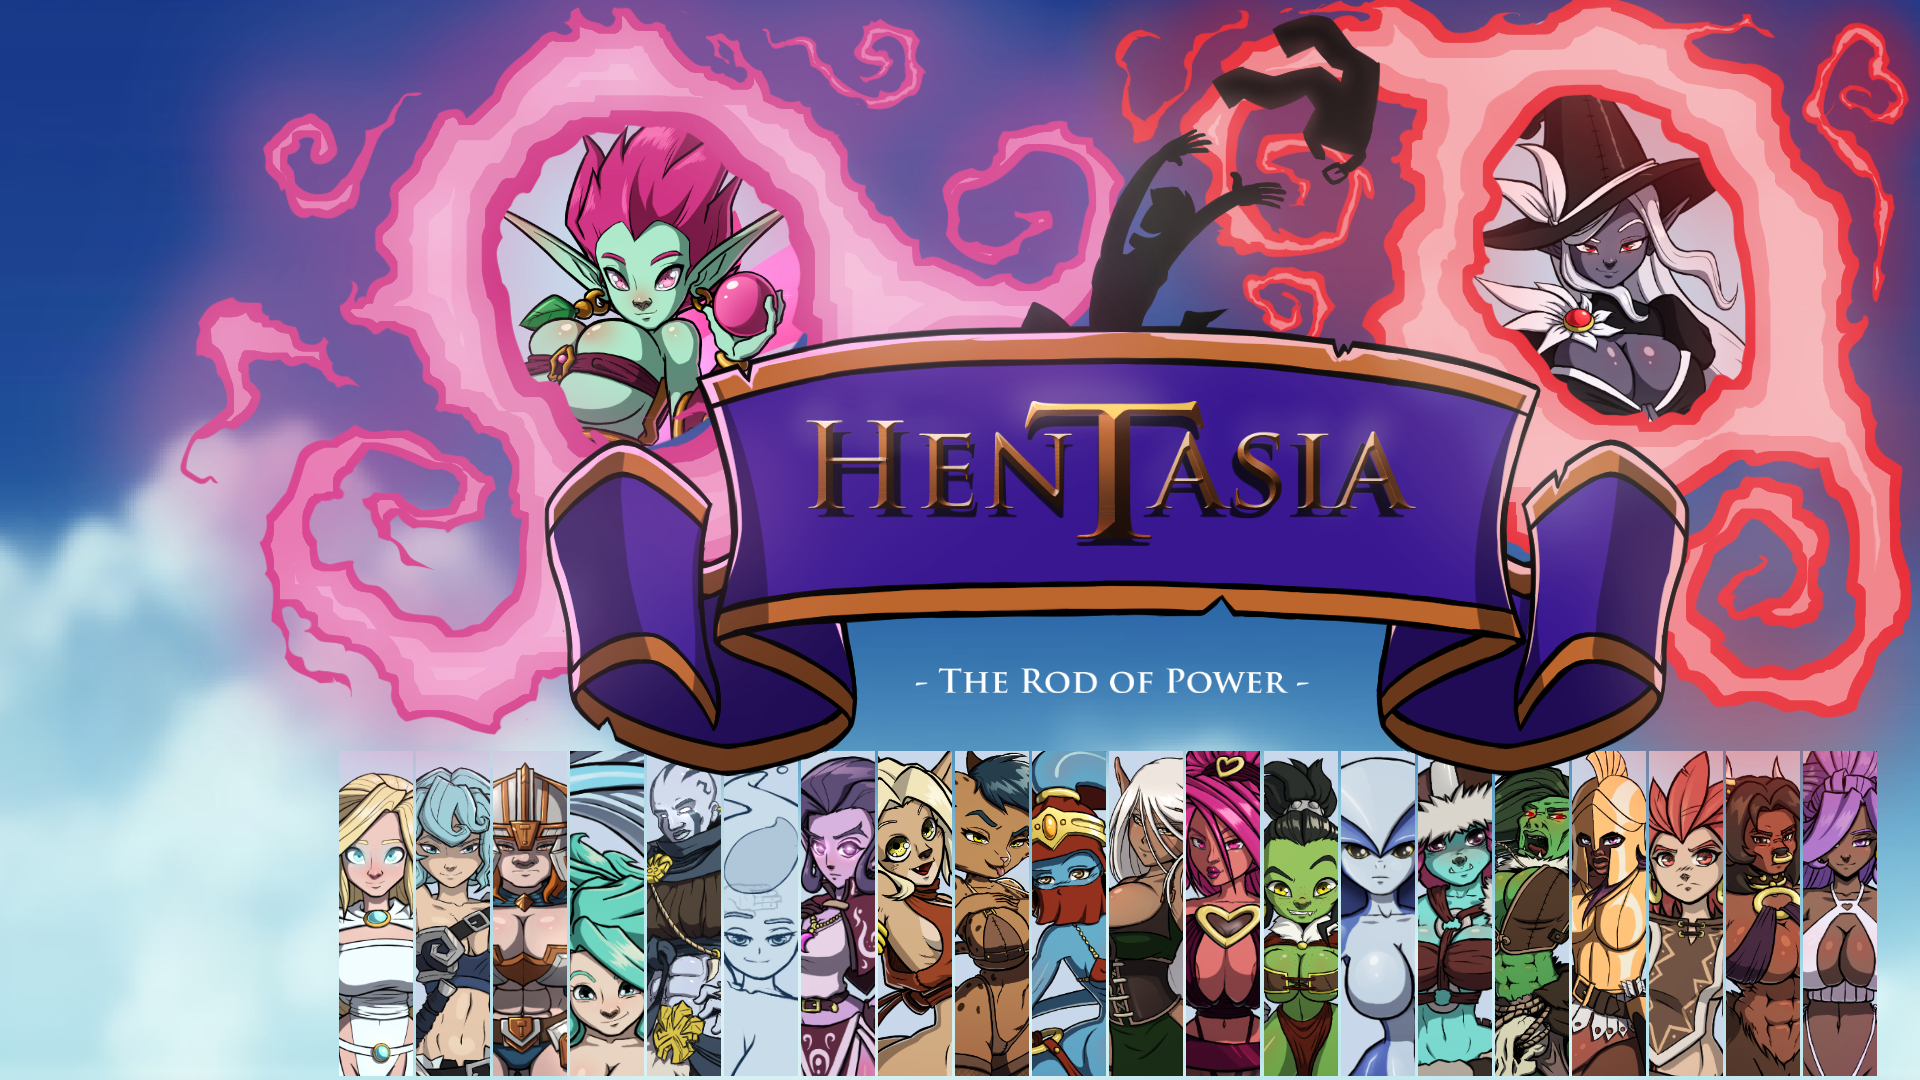 Hentasia - The Rod of Power [v1.1] main image